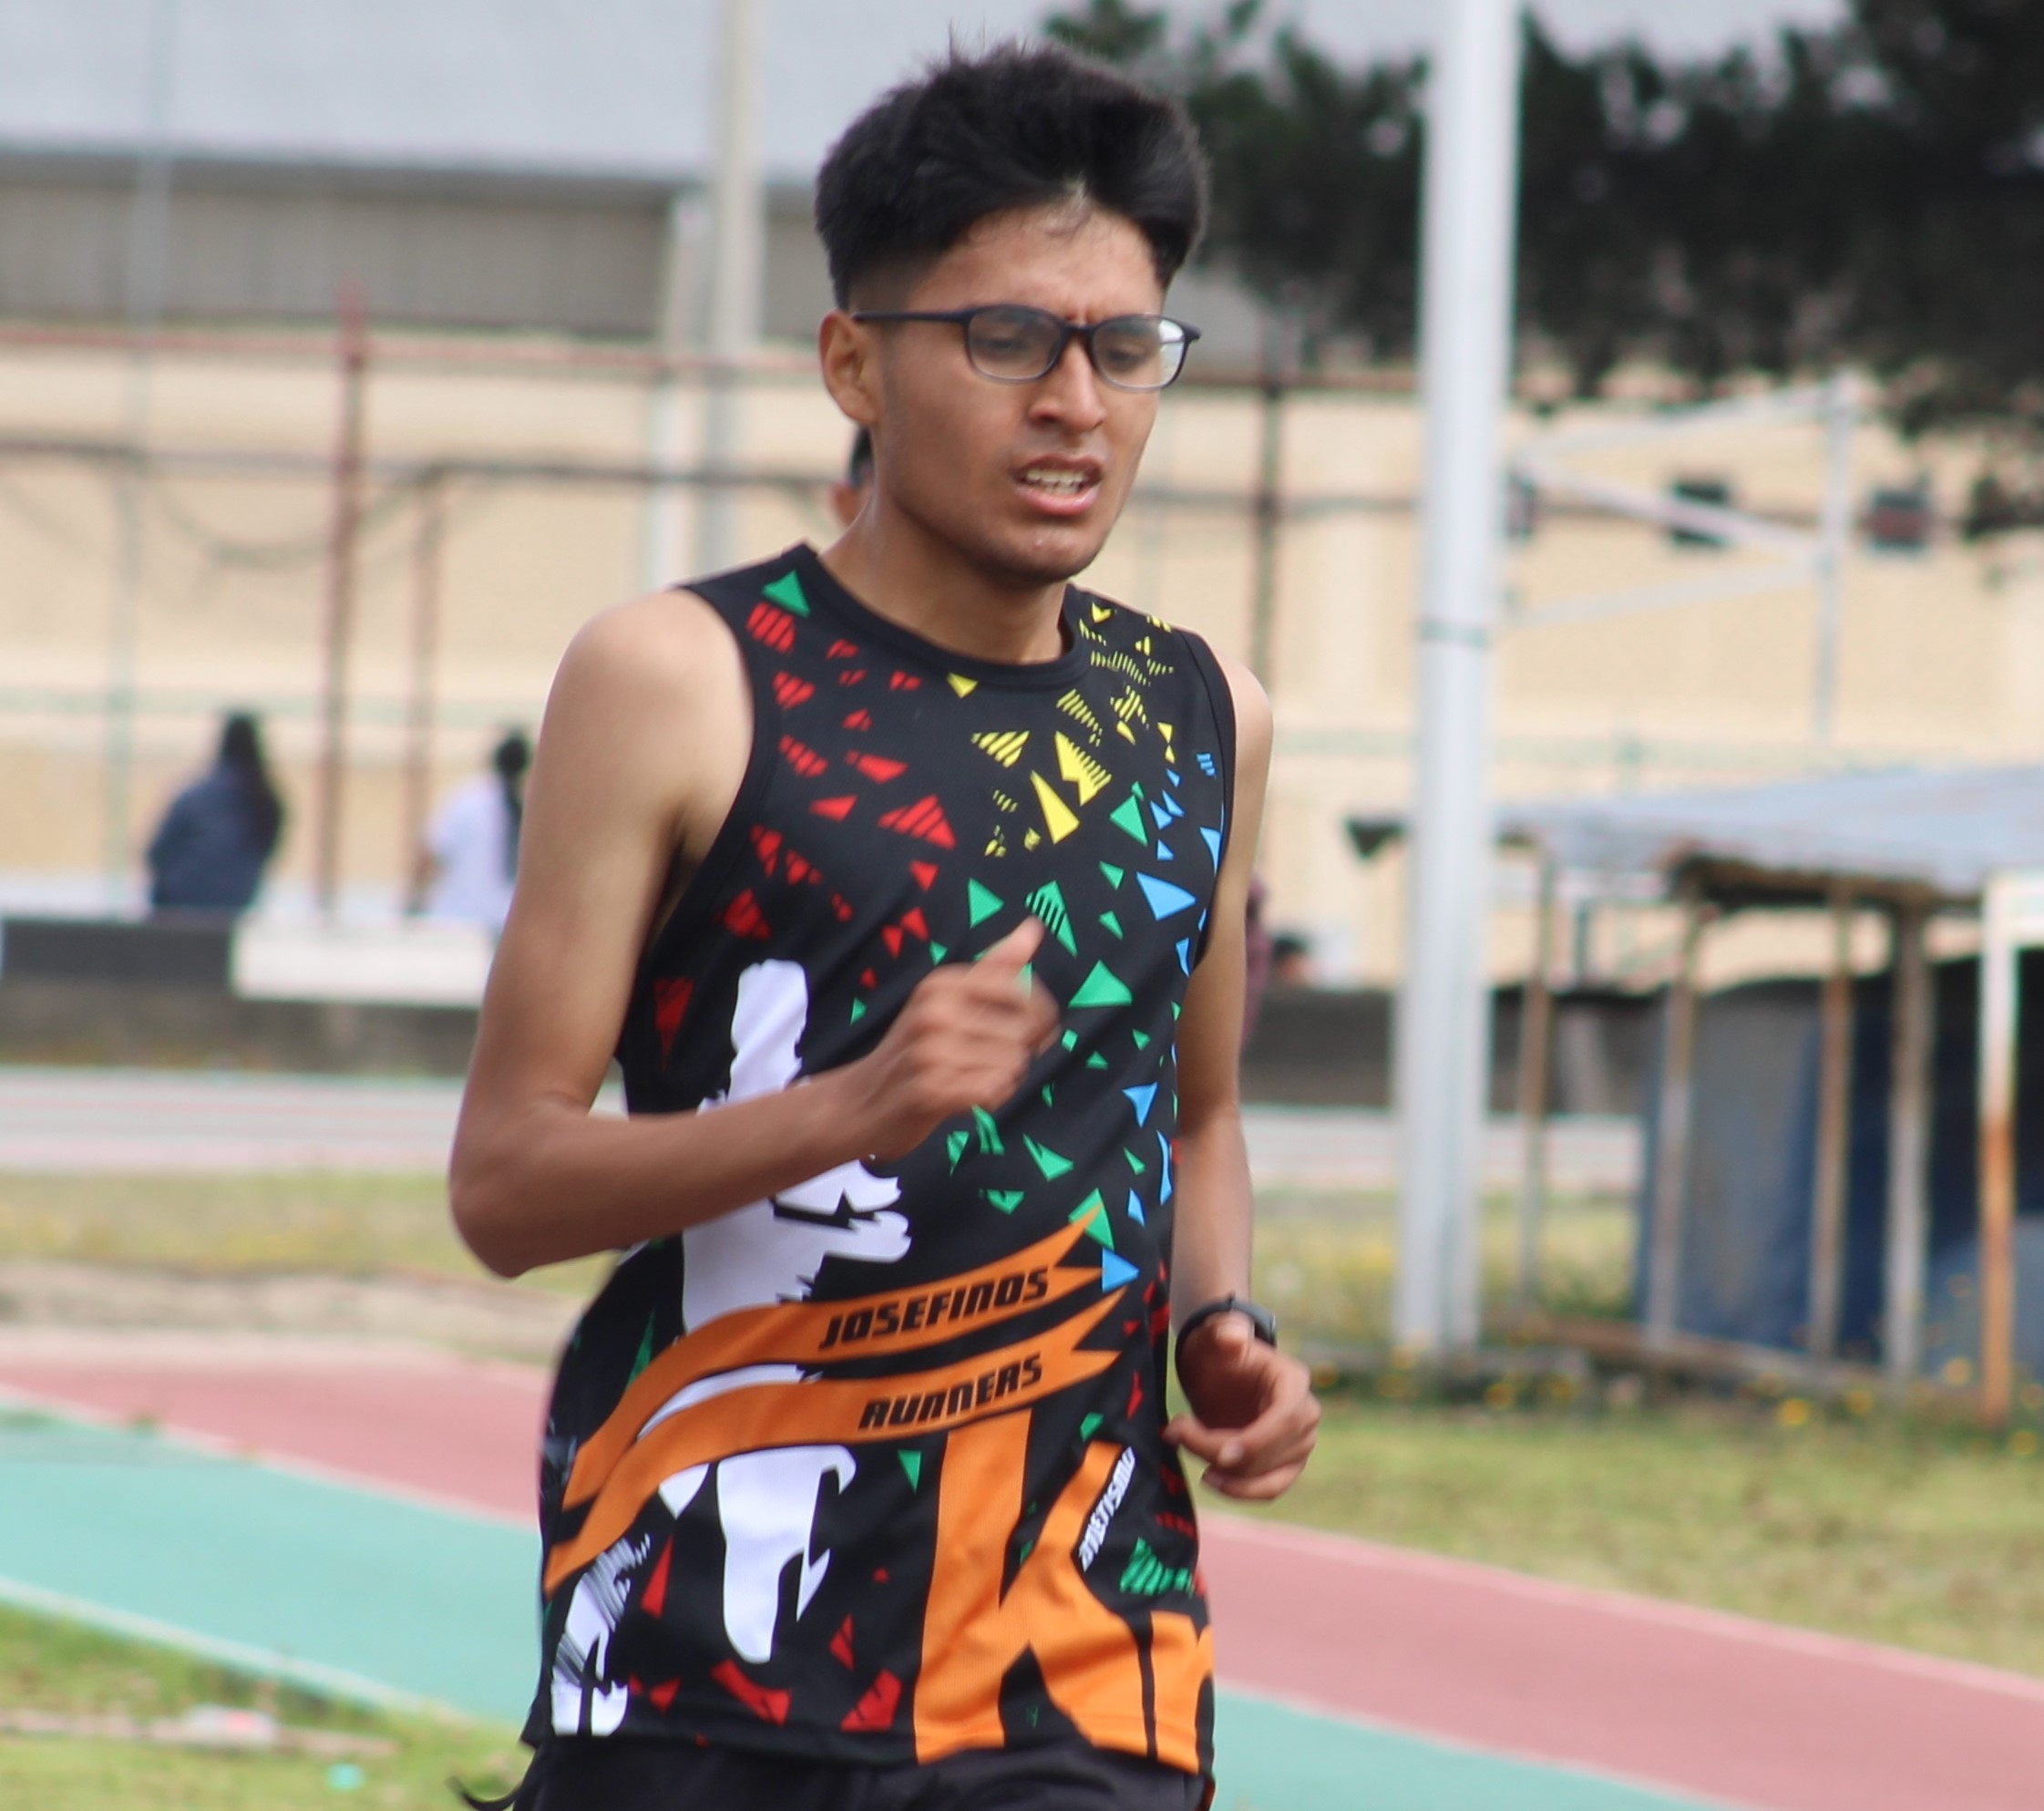 Mateo Gavilanes es el ganador de la prueba de los 5.000 metros del intercolegial de atletismo en Tungurahua.